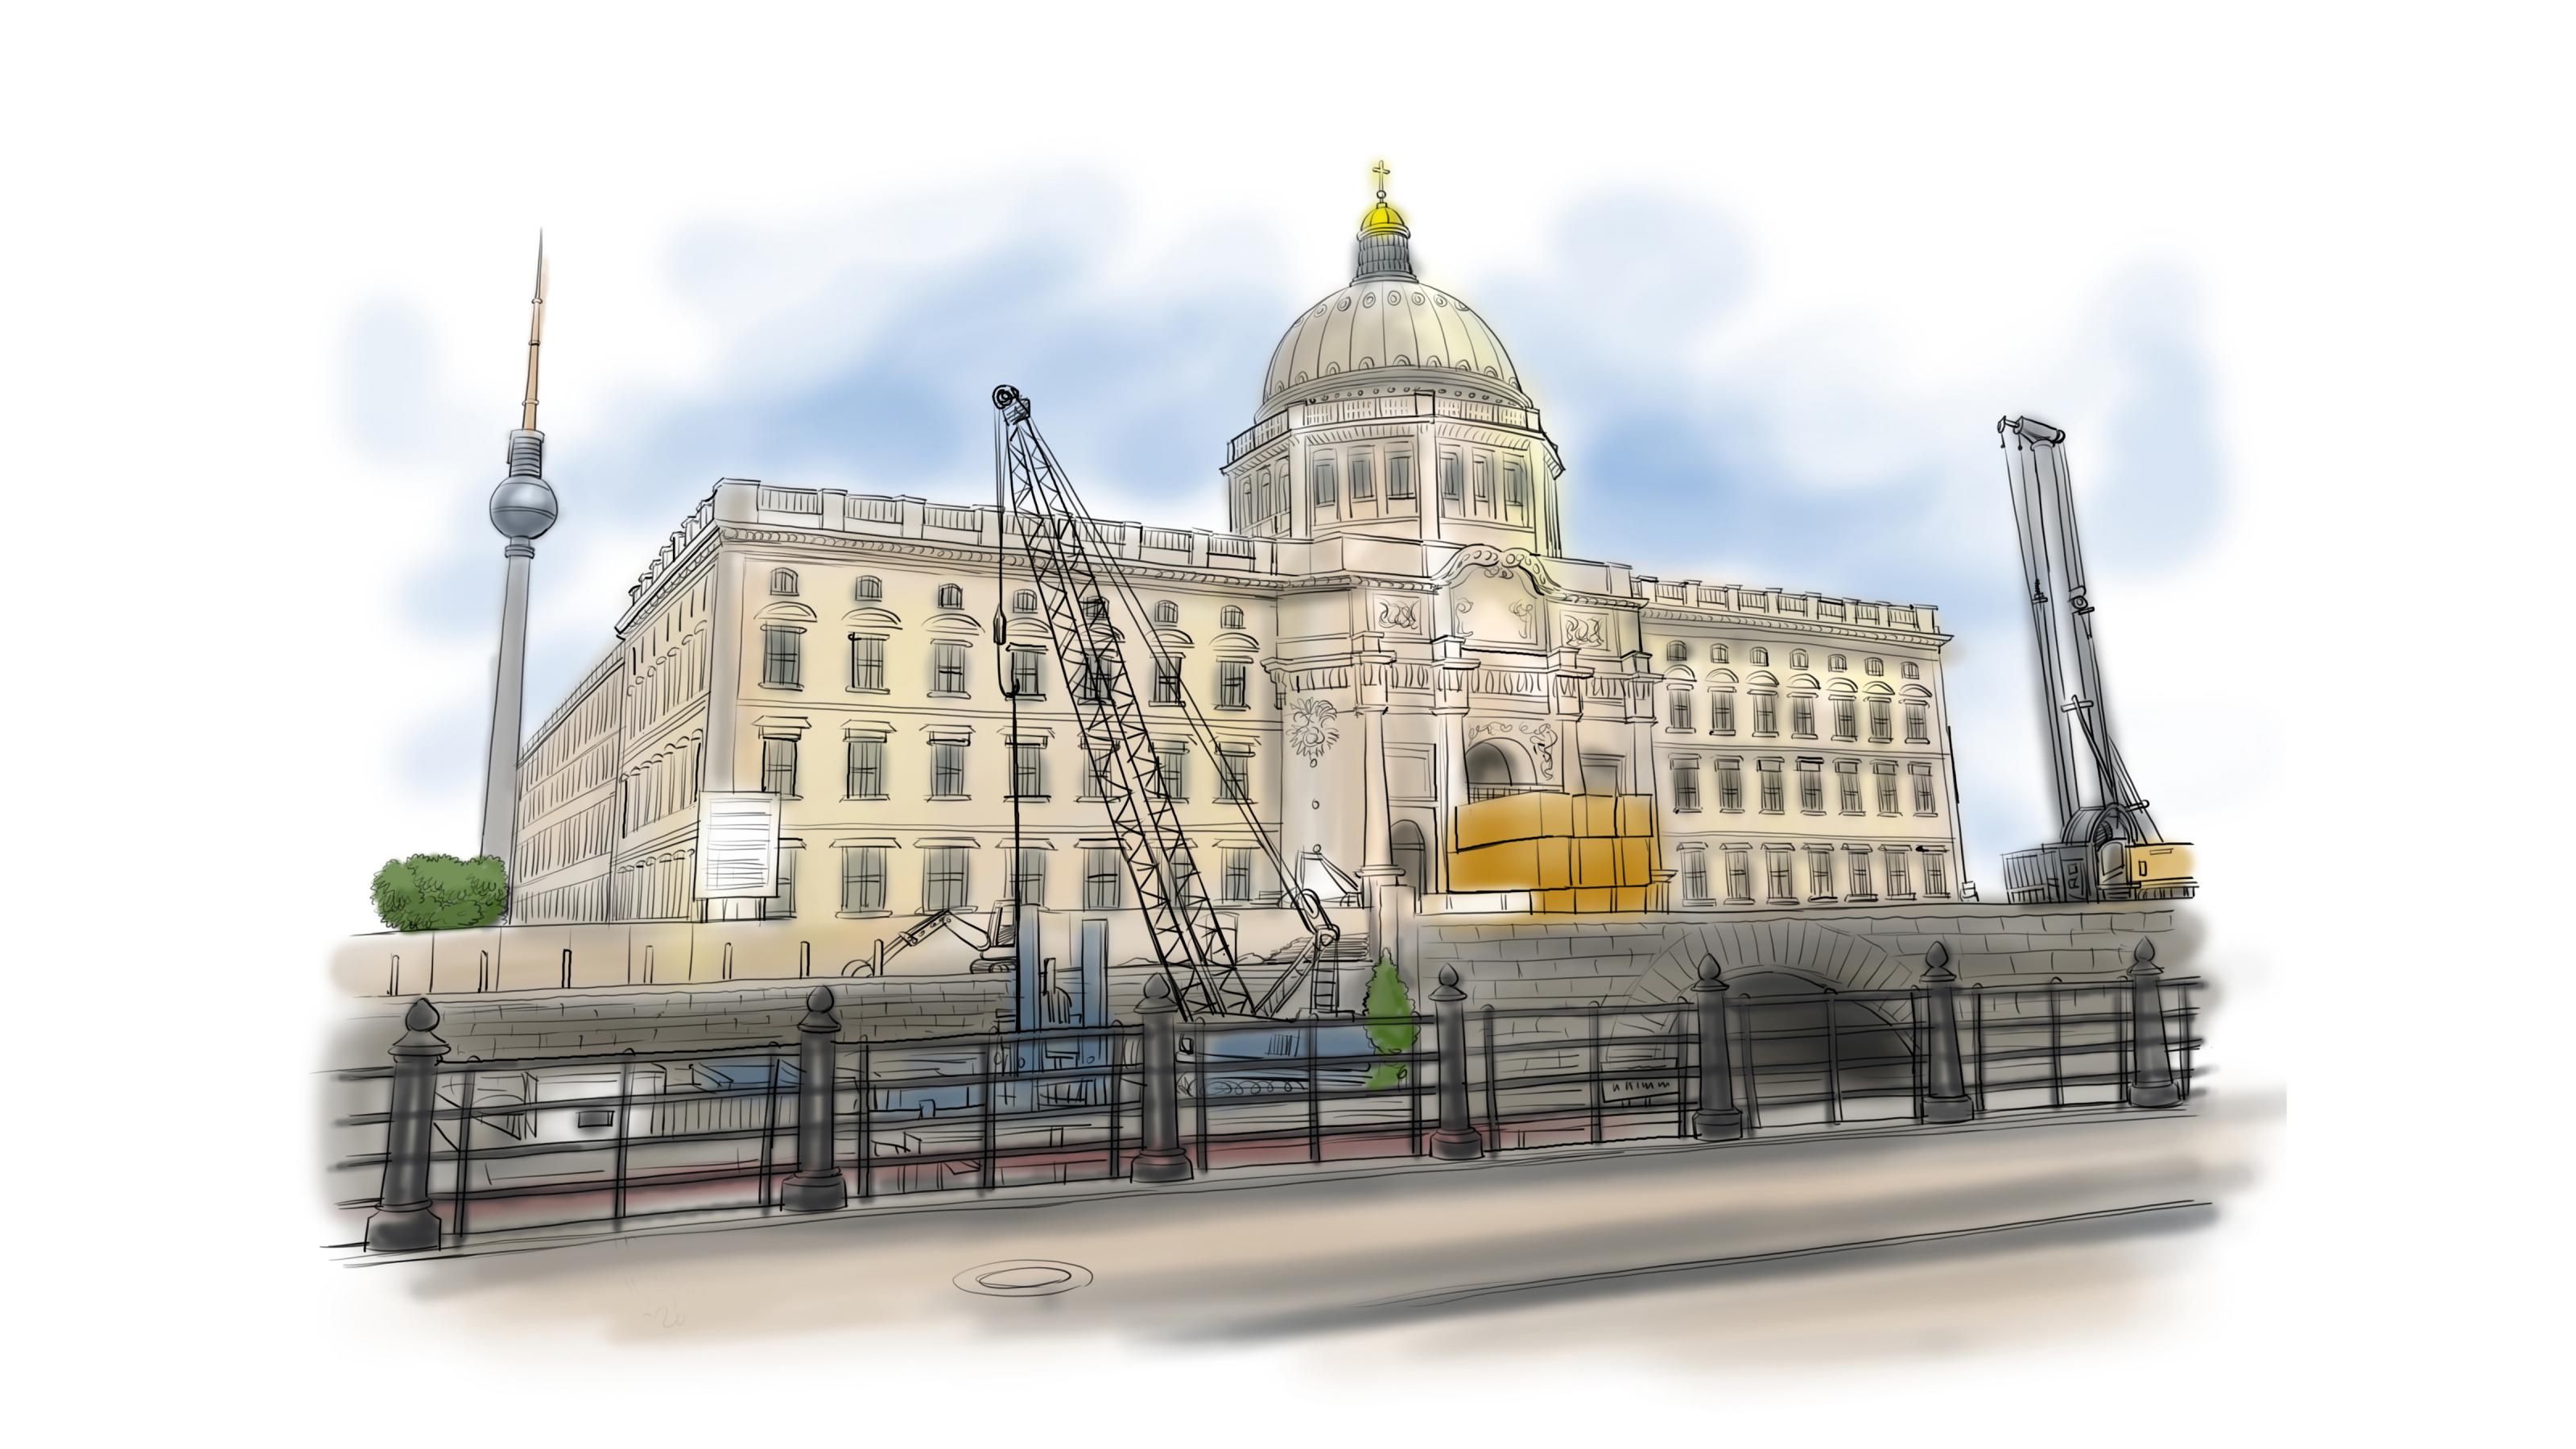 Das Bild zeigt die Baustelle Berliner Schloss. Ein Kran und zwei Bagger sind zu sehen. Im Hintergrund der Fernsehturm.